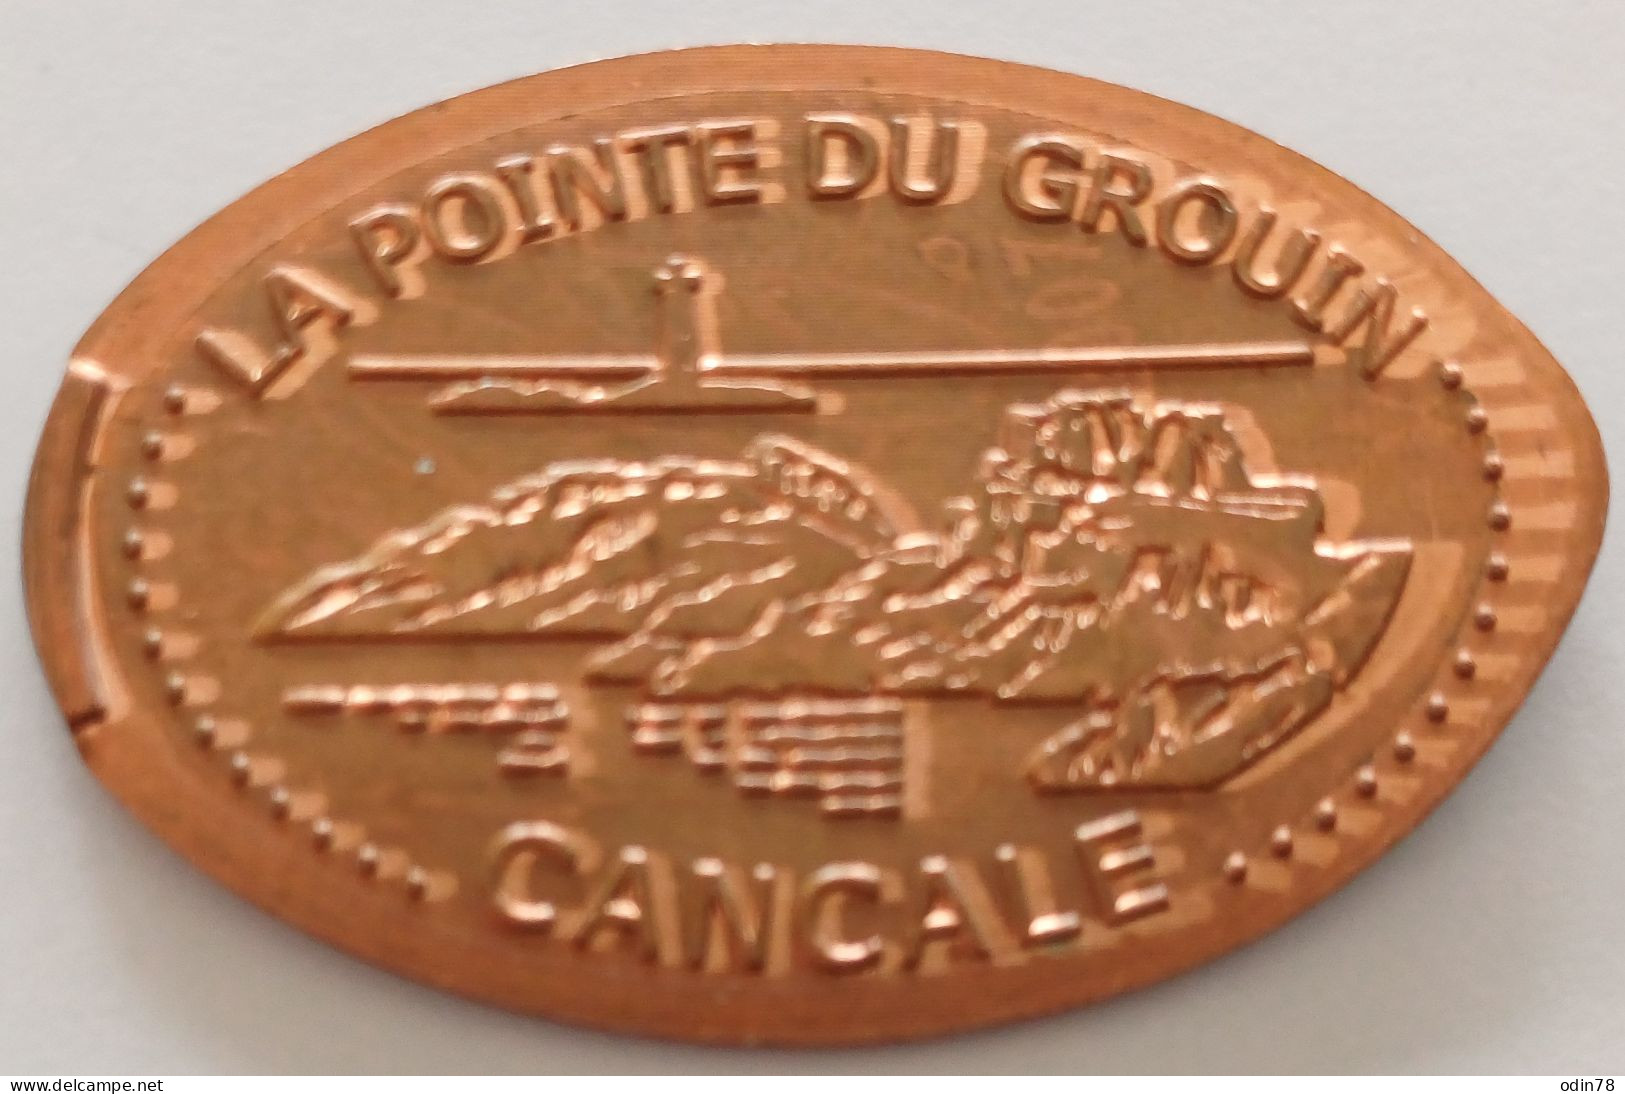 Pièce écrasée -   LA POINTE DU GROUIN - CANCALE - Souvenir-Medaille (elongated Coins)